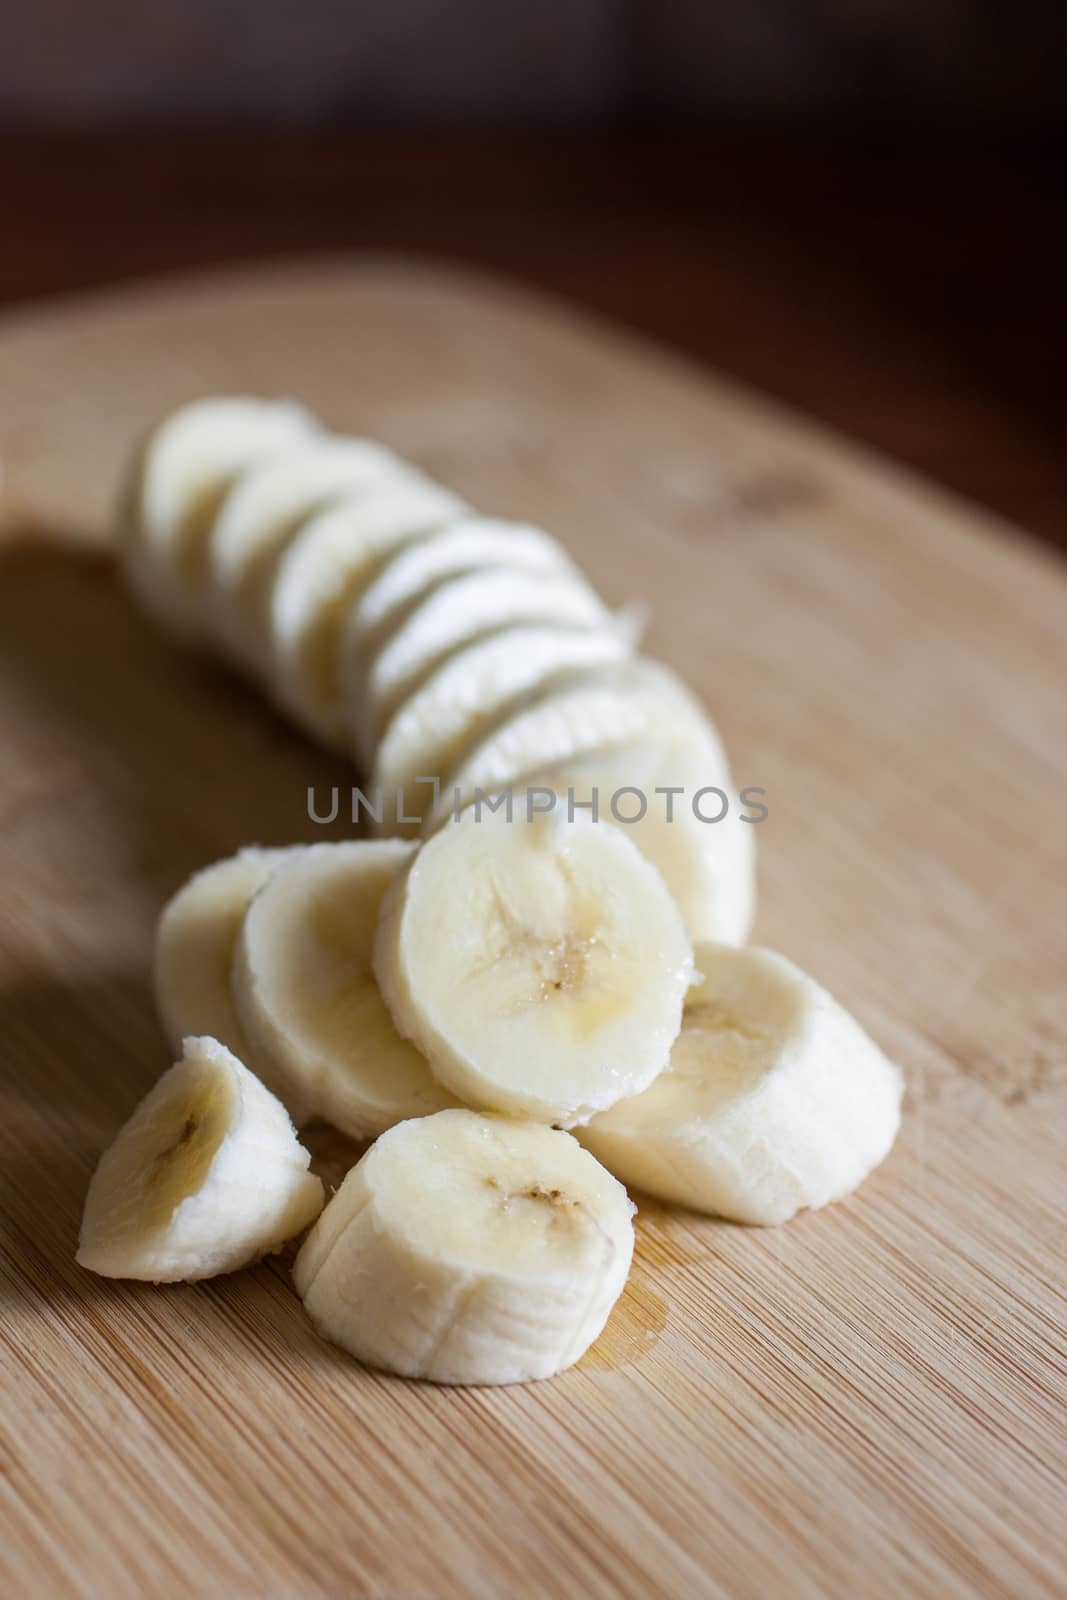 A cut banana on a bamboo cutting board in the morning sunlight.